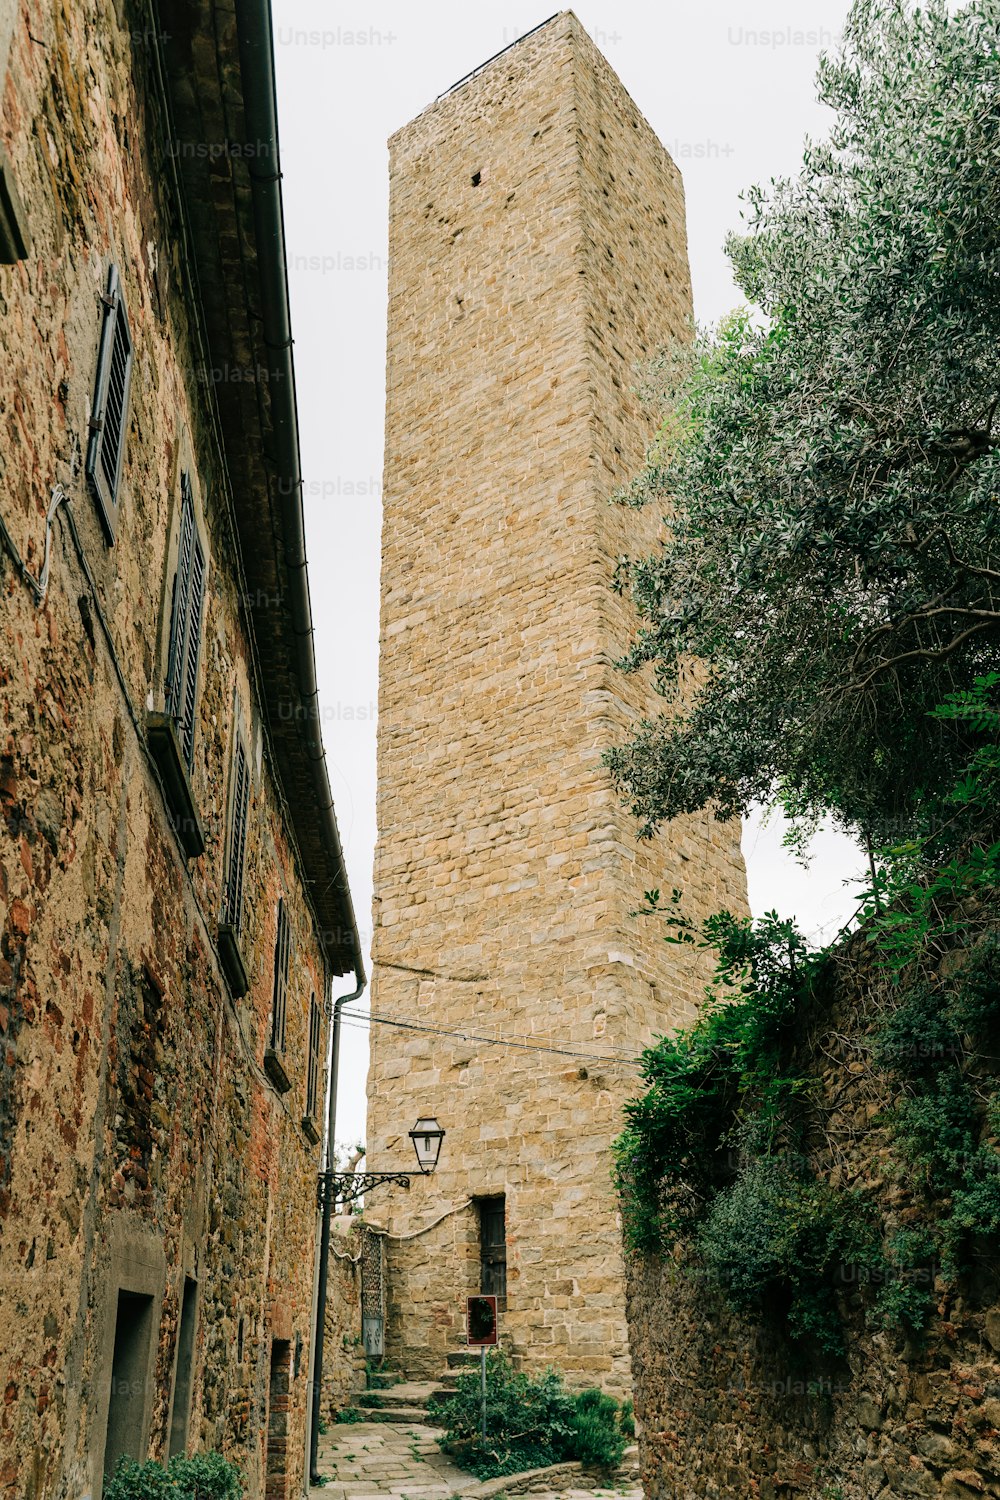 Un edificio in pietra con una torre dell'orologio sullo sfondo